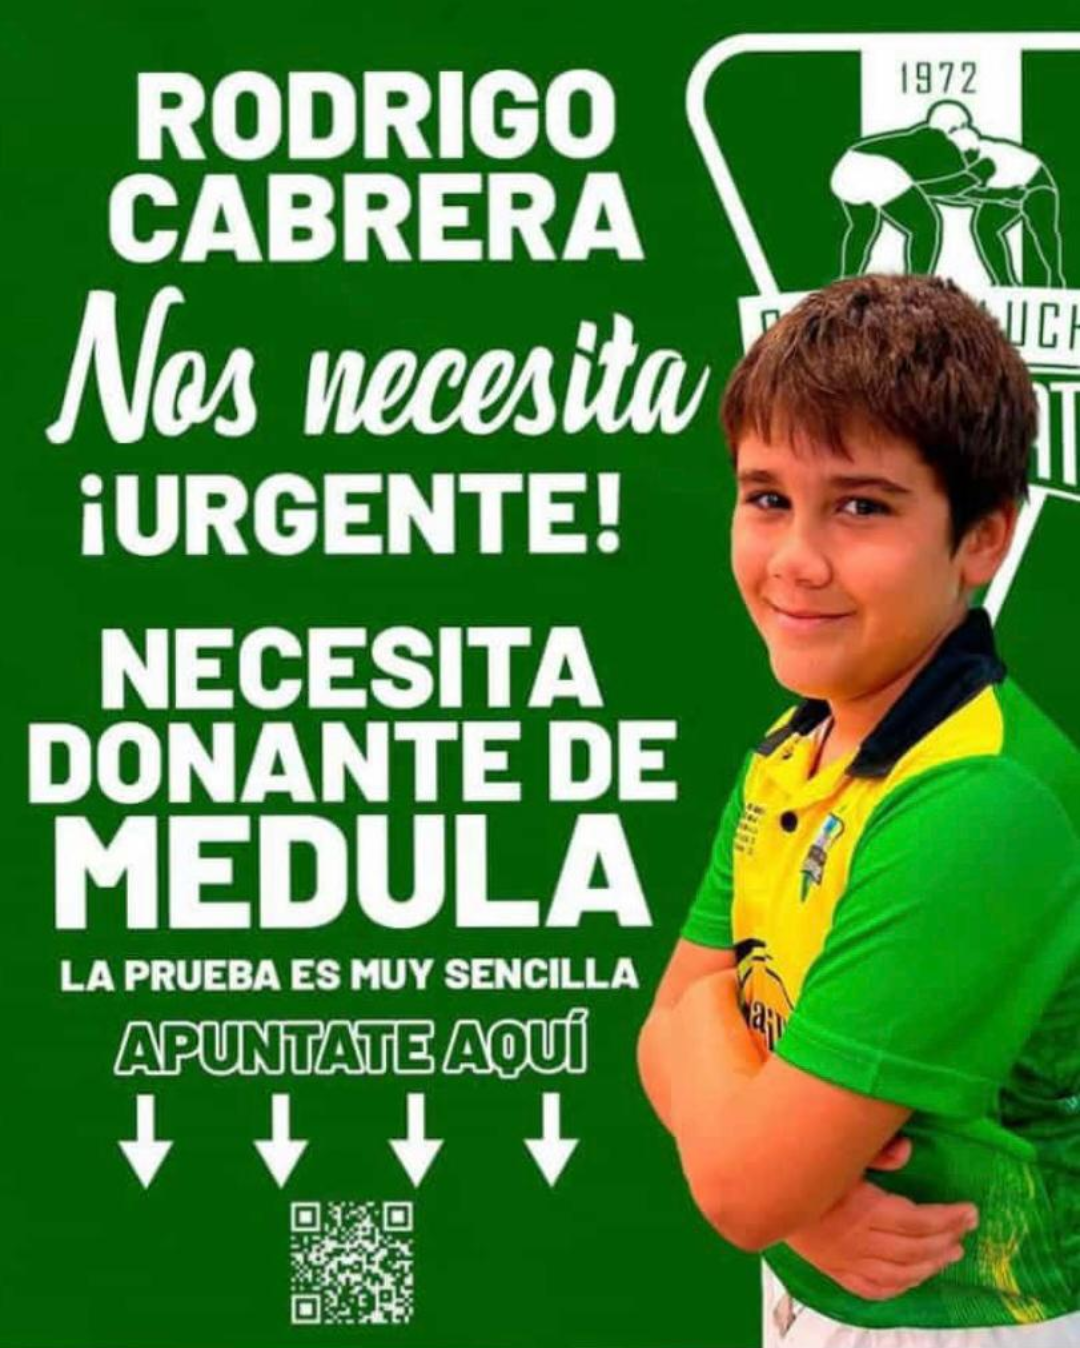 Cartel elaborado para pedir donantes de médula para Rodrigo.